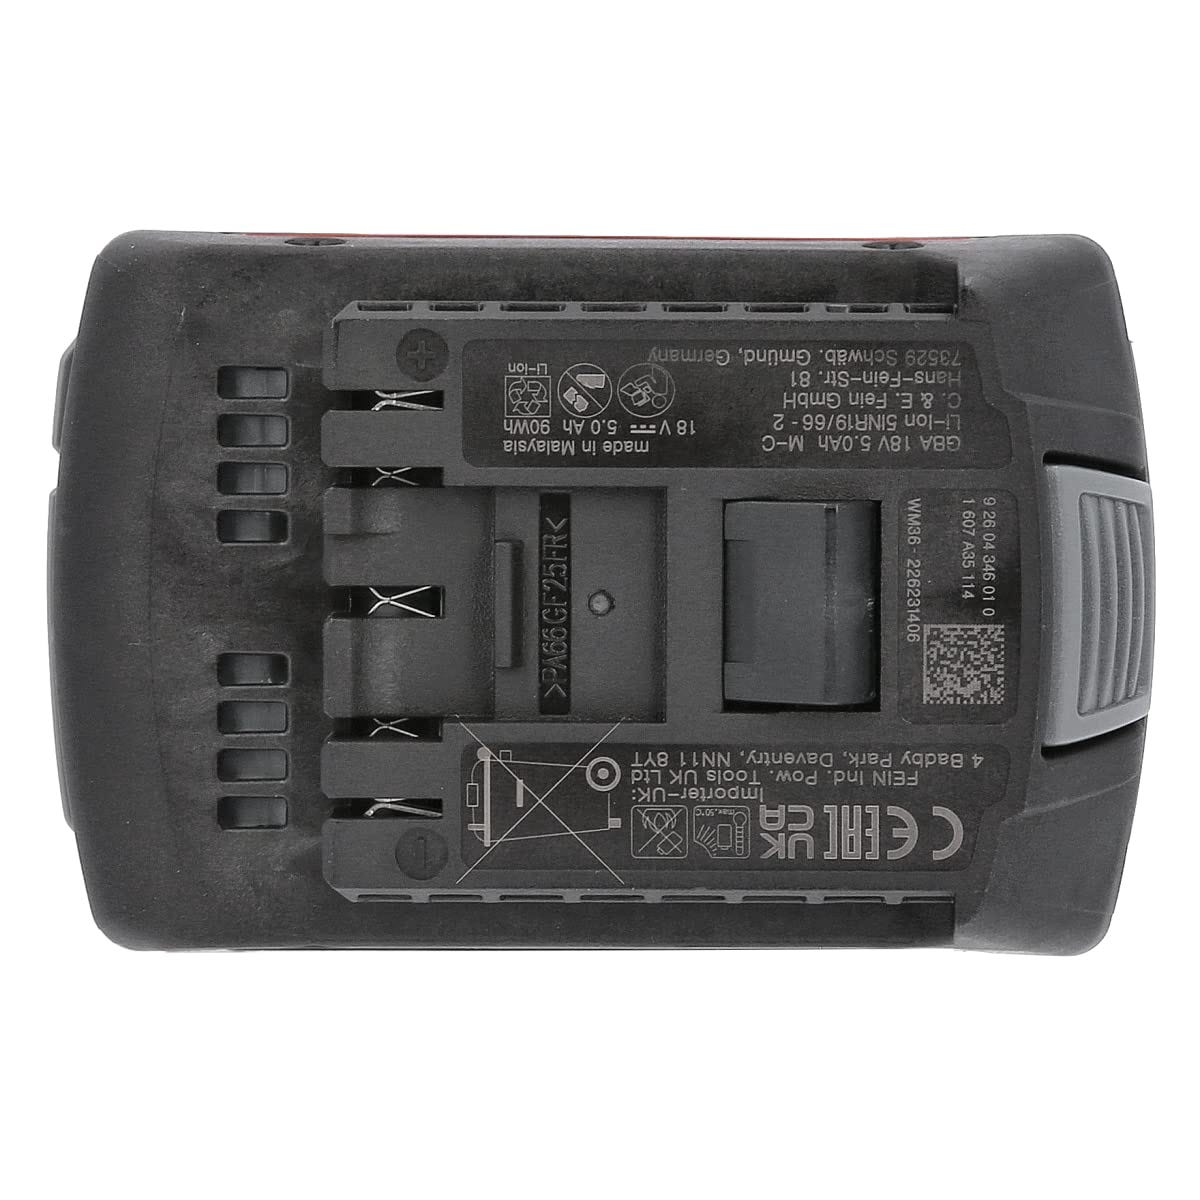 Batterie 18V GBA 5Ah AMPShare - FEIN - 92604346020 3